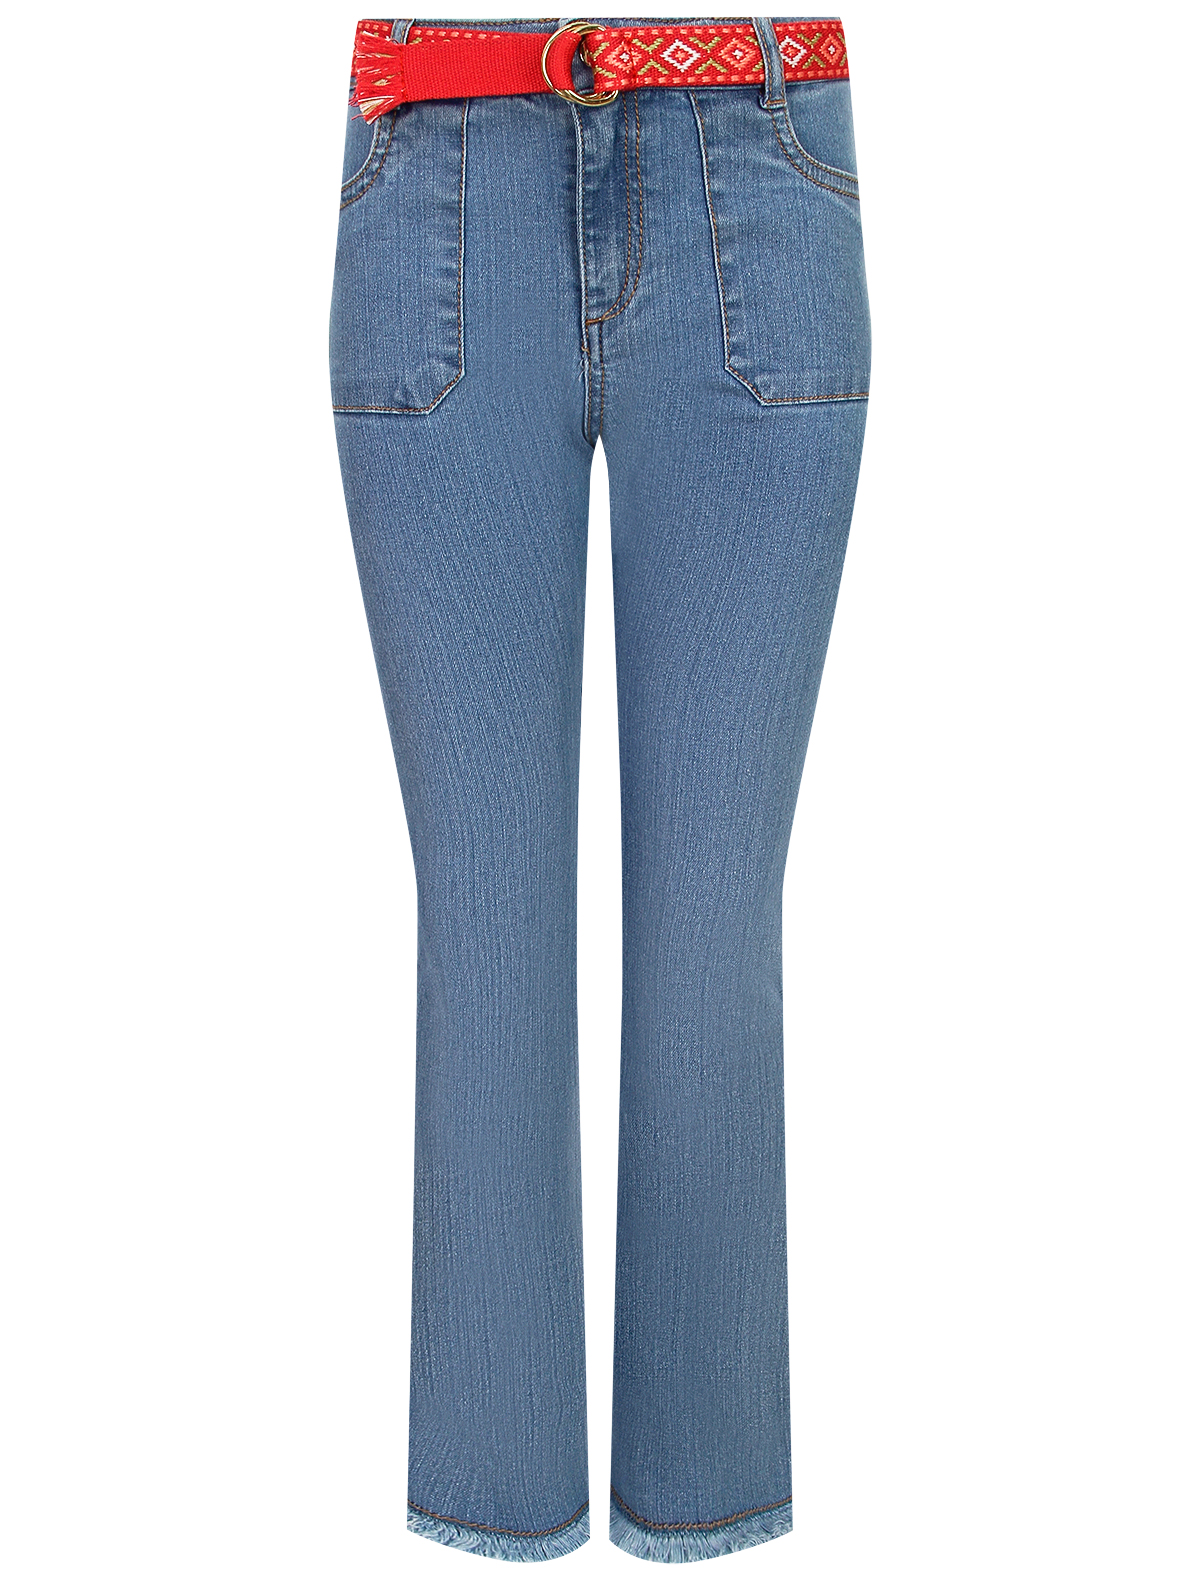 джинсы mayoral для девочки, синие